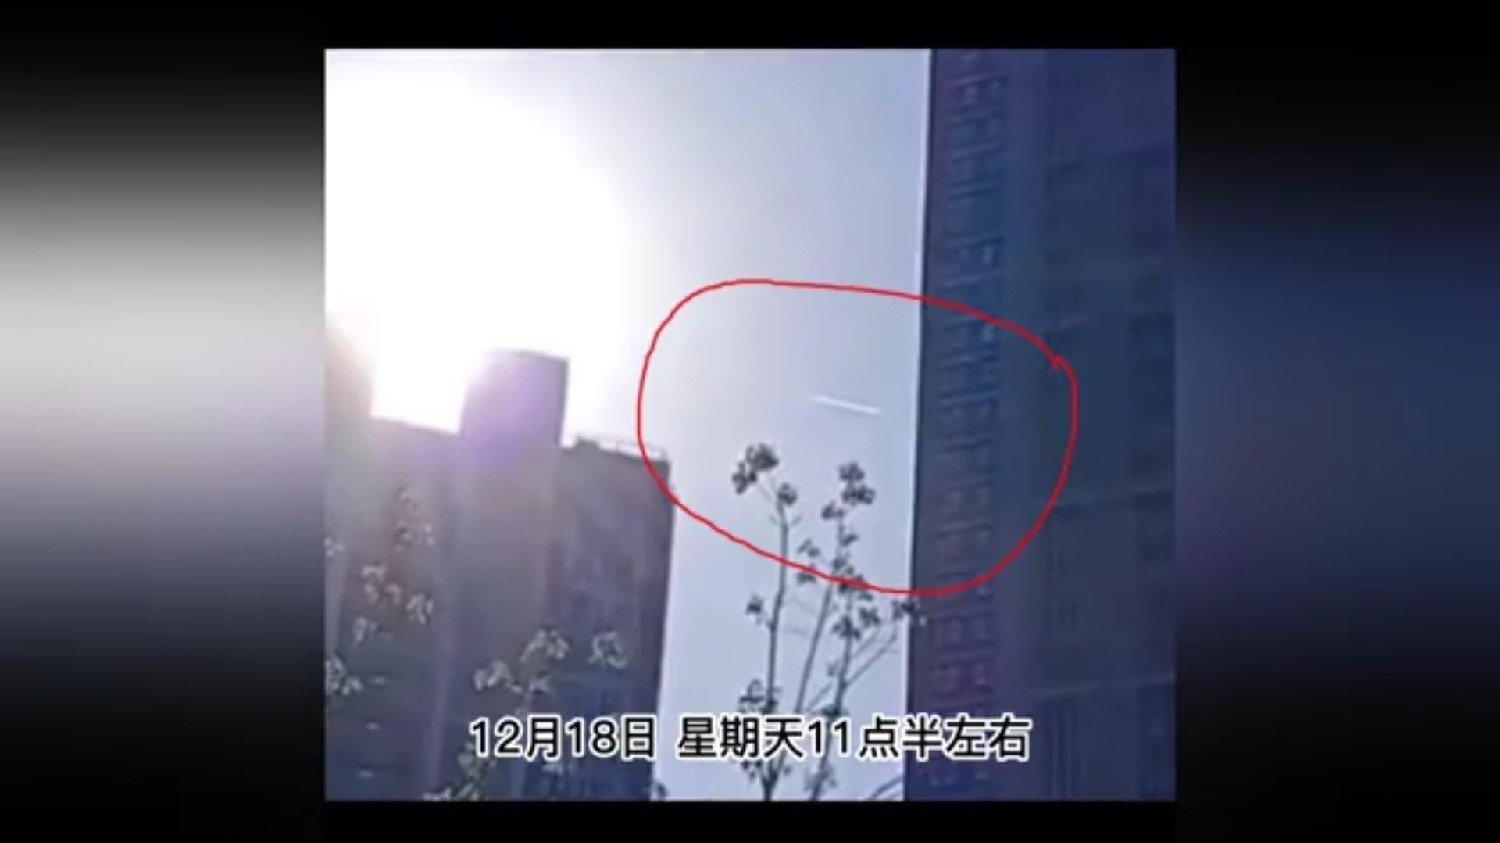 上海附近疑似出现不明飞行物